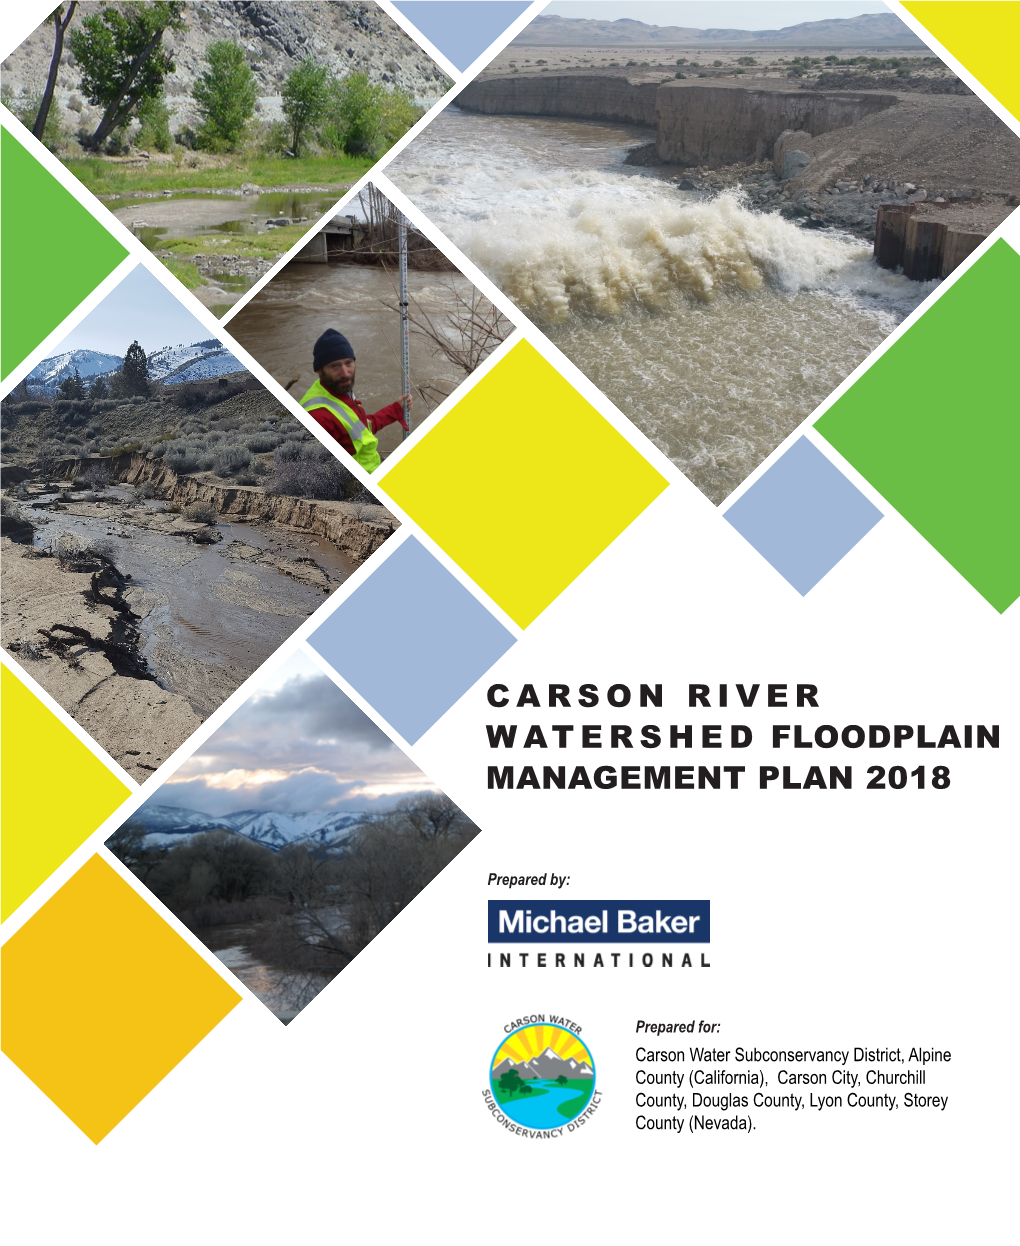 Carson River W a T E R S H E D Floodplain Management